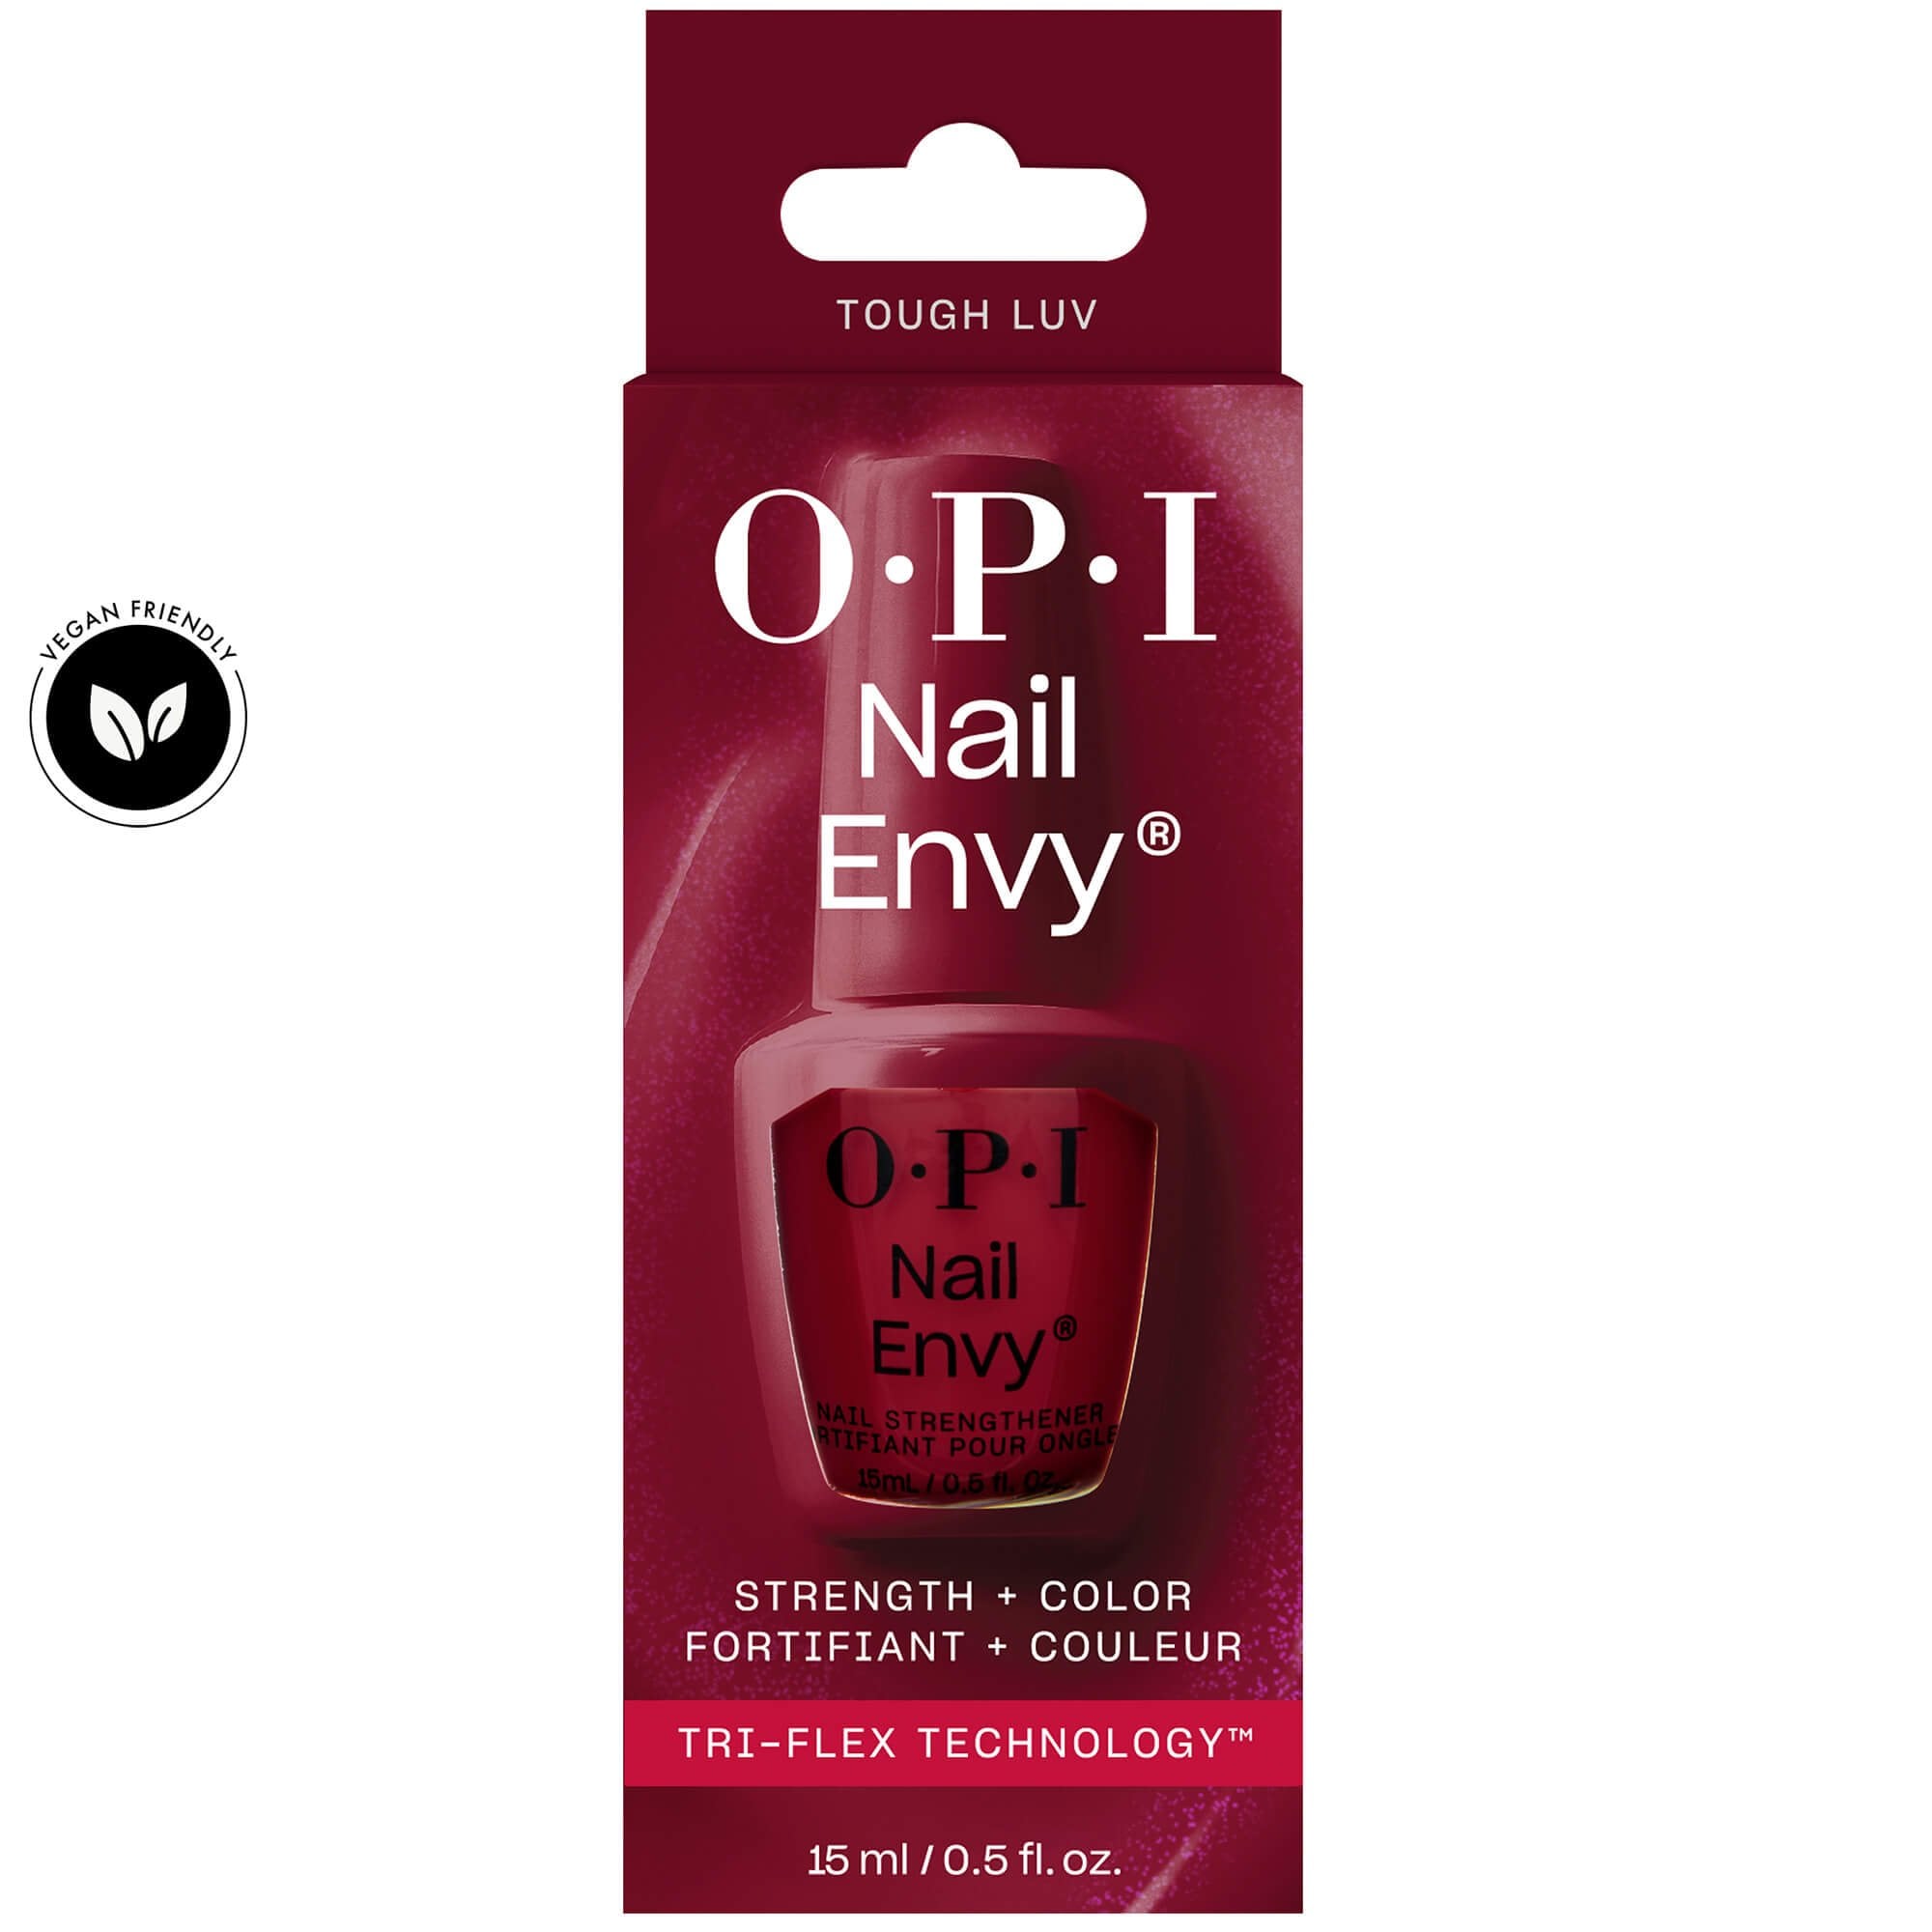 OPI Nail Envy Nail Treatment - Tri-Flex Technology Tough Luv (NT226)